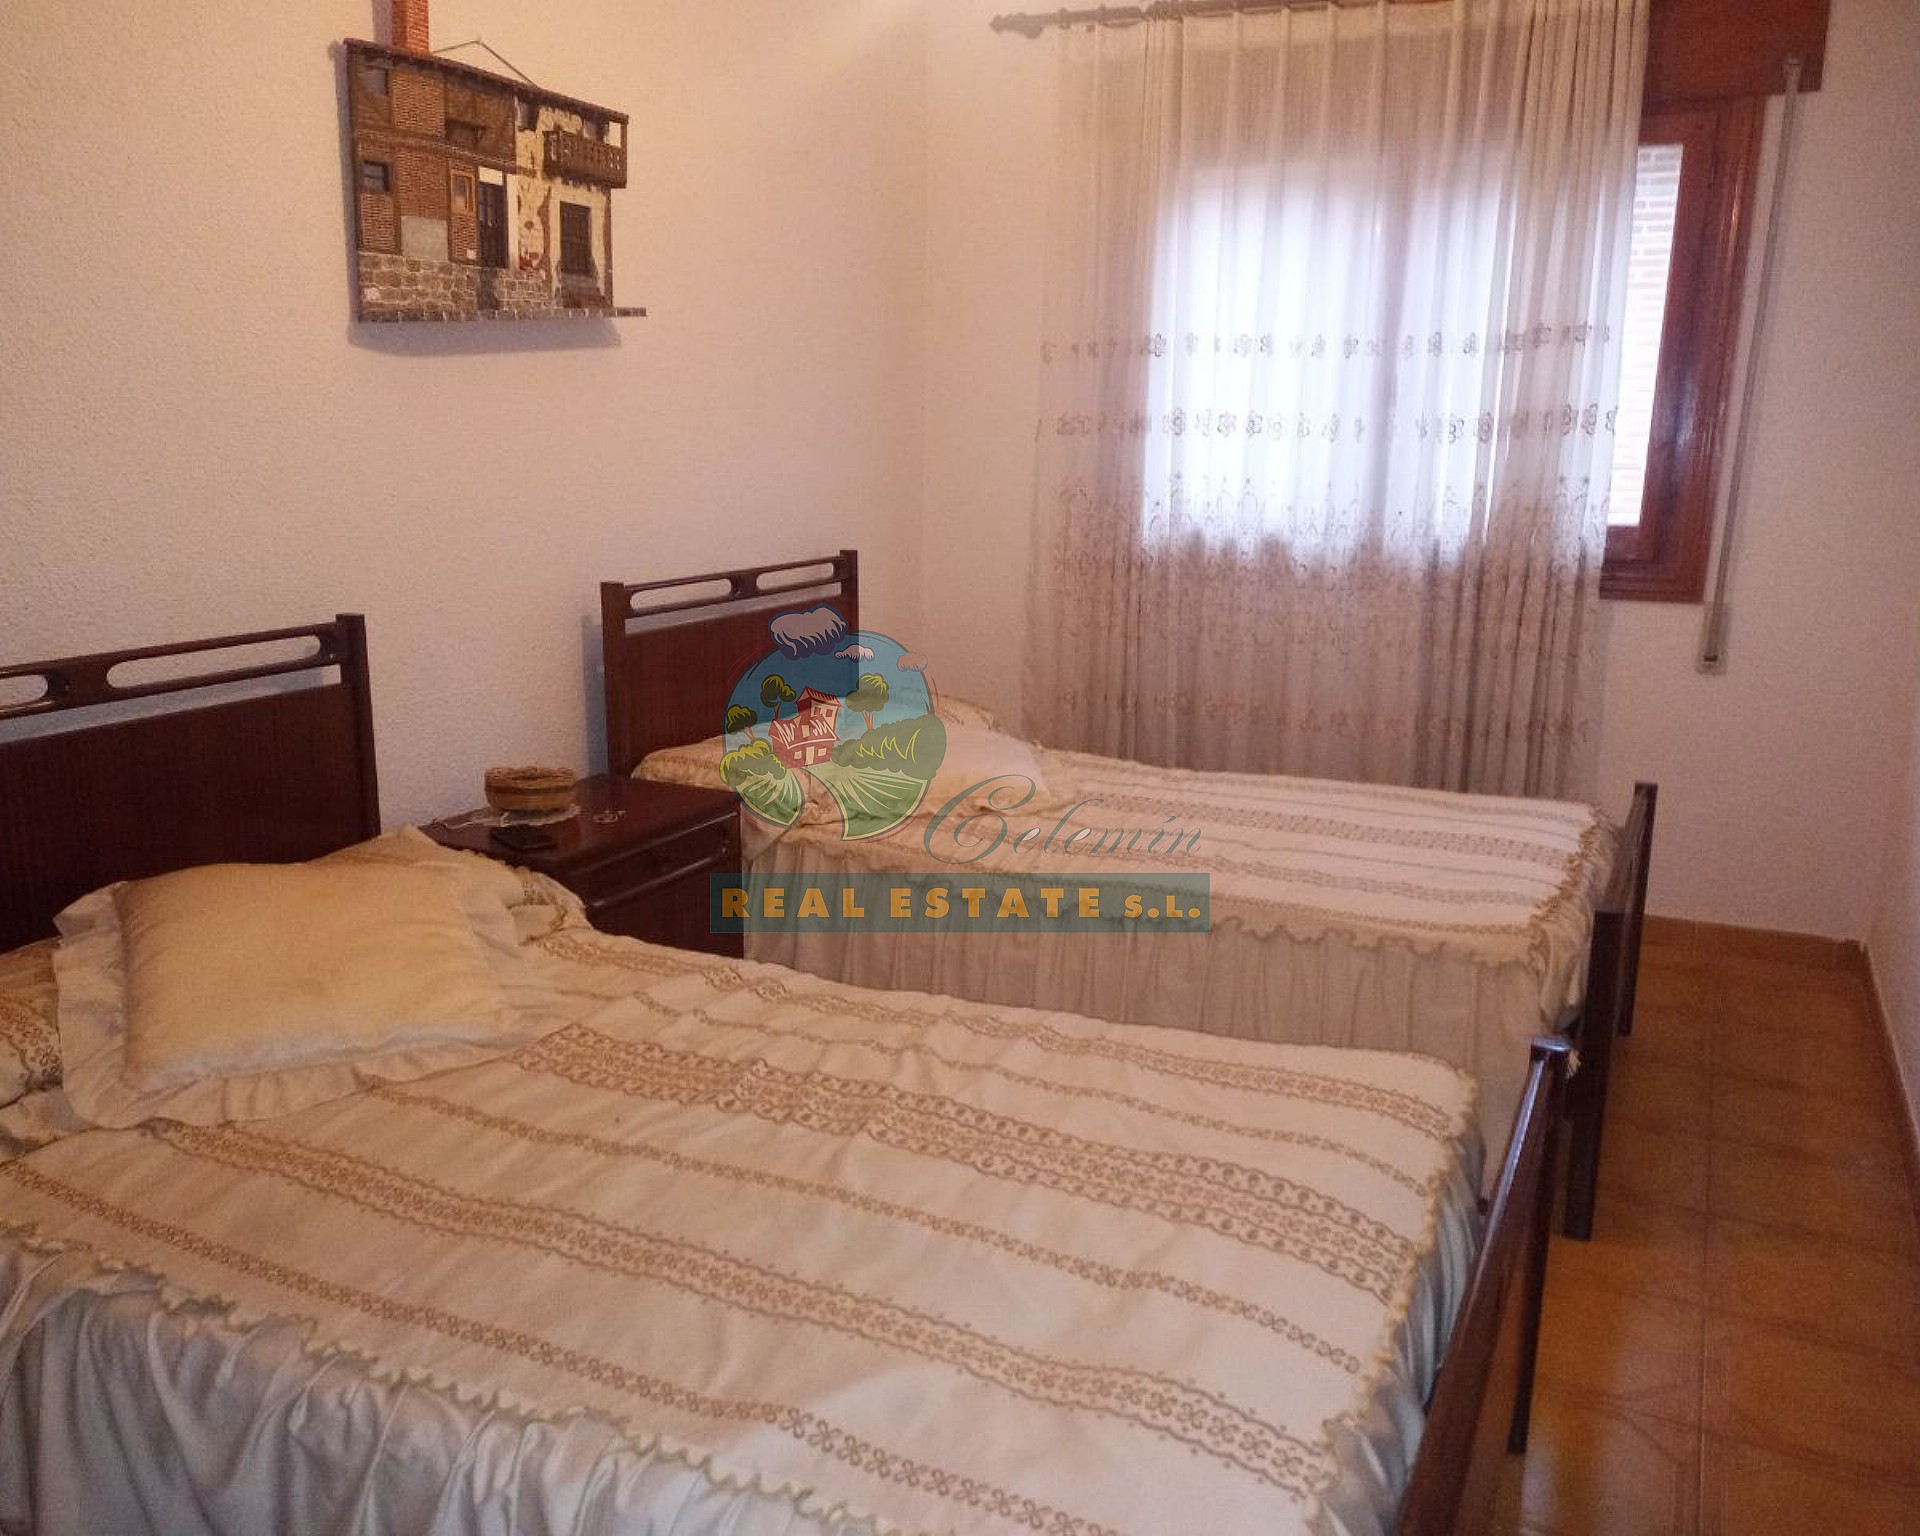 4-bedroom duplex in Sierra de Gredos. 